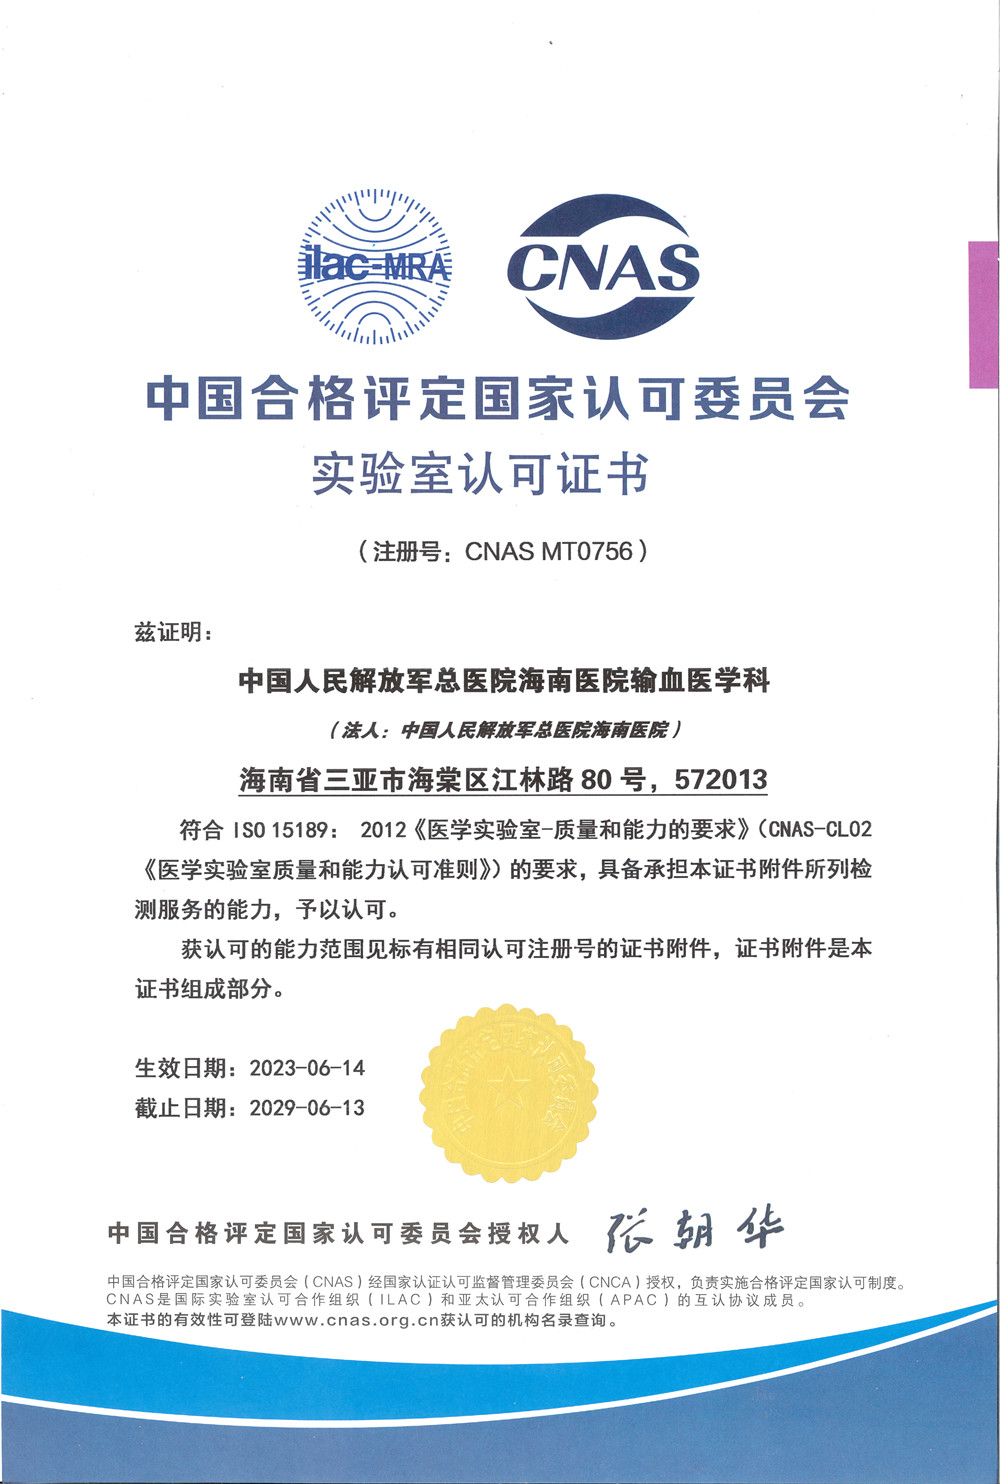 解放军总医院海南医院输血医学科 荣获ISO15189实验室认可证书